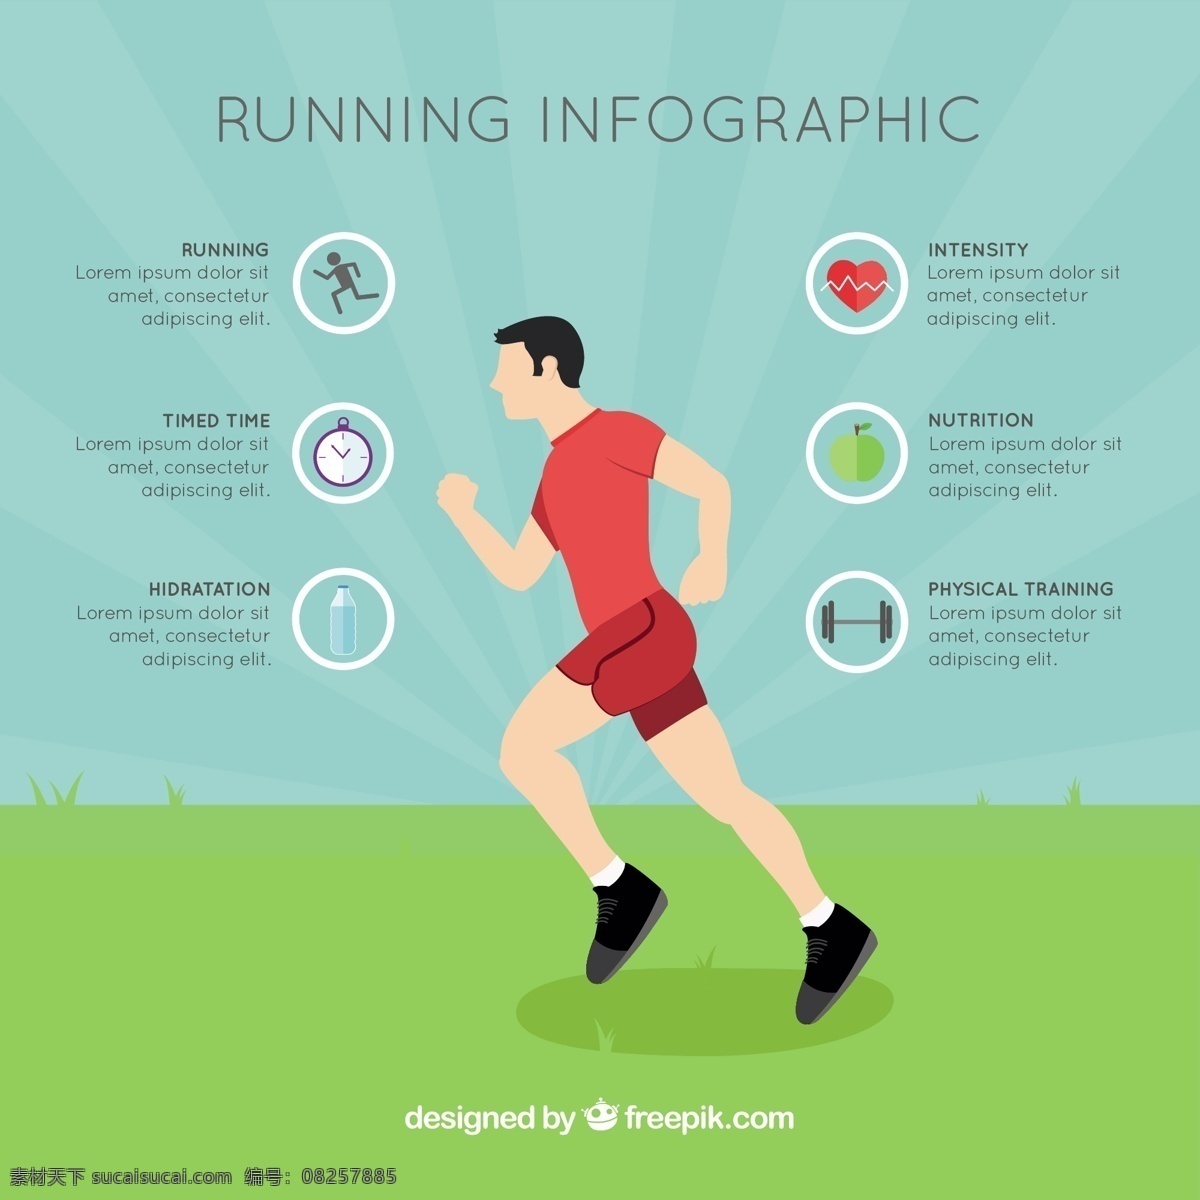 平面设计 中 流道 图形 图表 模板 运动 健身 健康 体育 平坦 跑 过程中 信息图表模板 数据 信息 健康信息